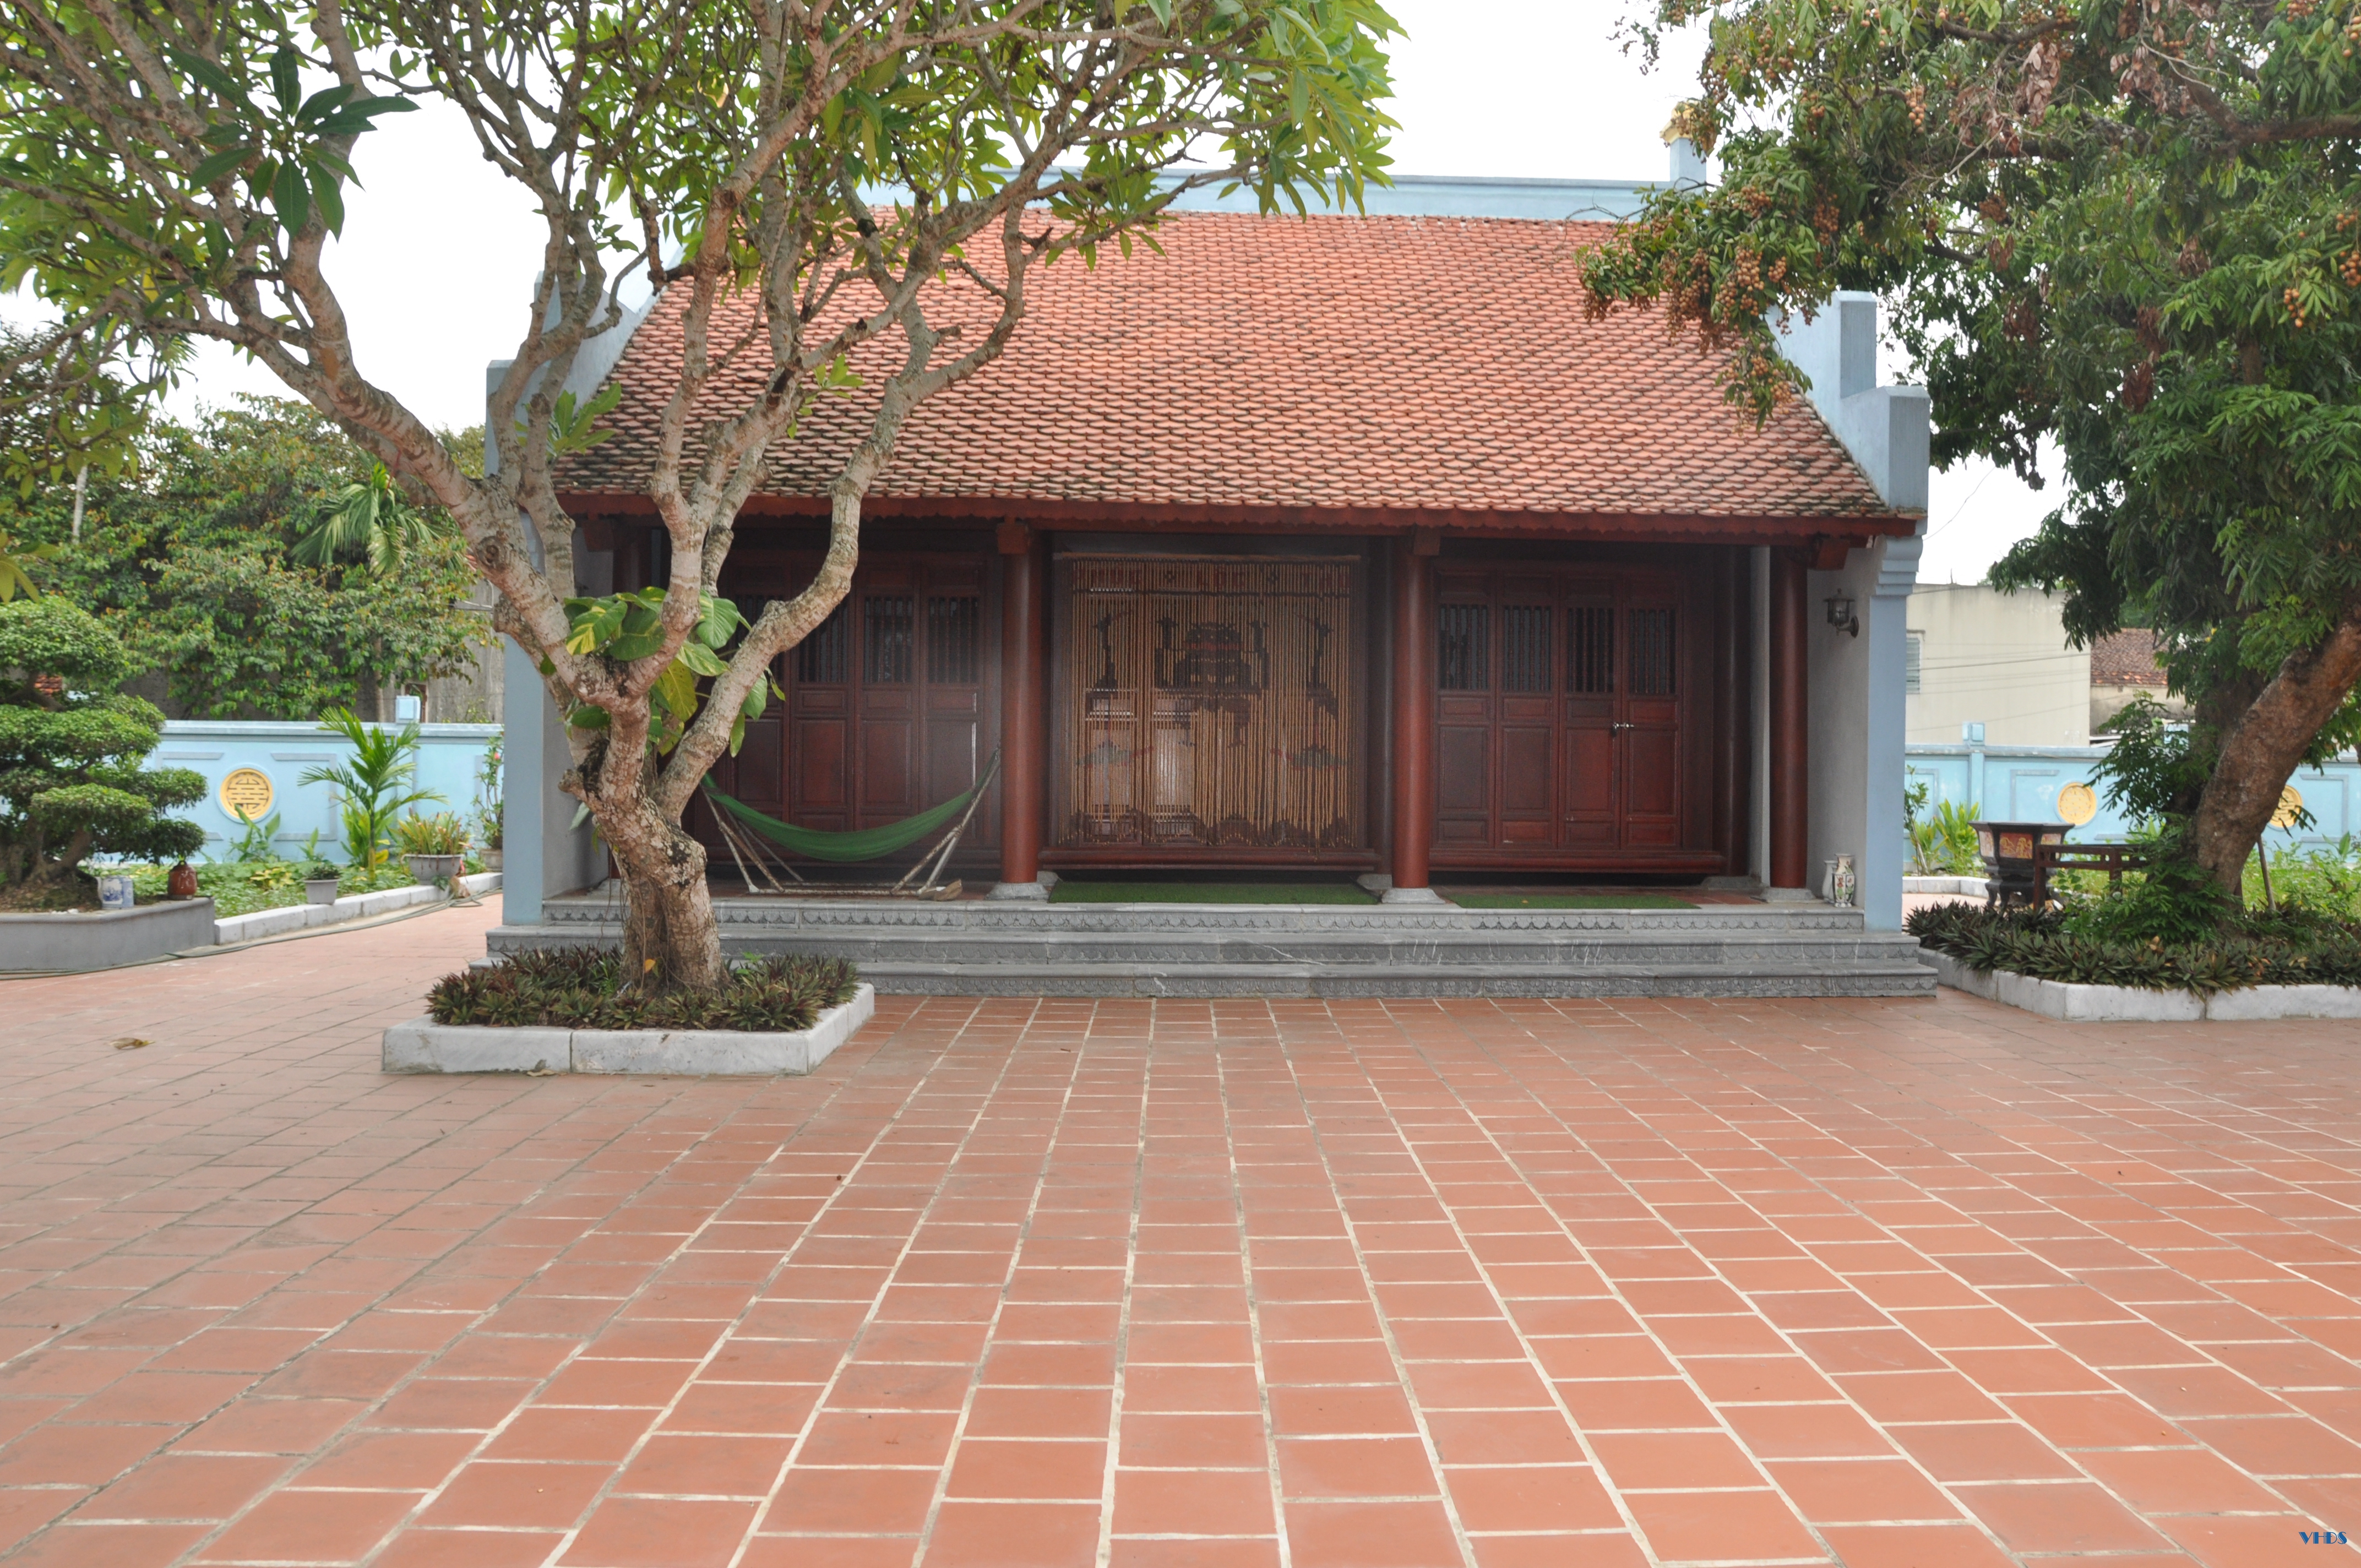 Đền thờ Nguyễn Nhữ Soạn: Một điểm đến ở huyện Đông Sơn